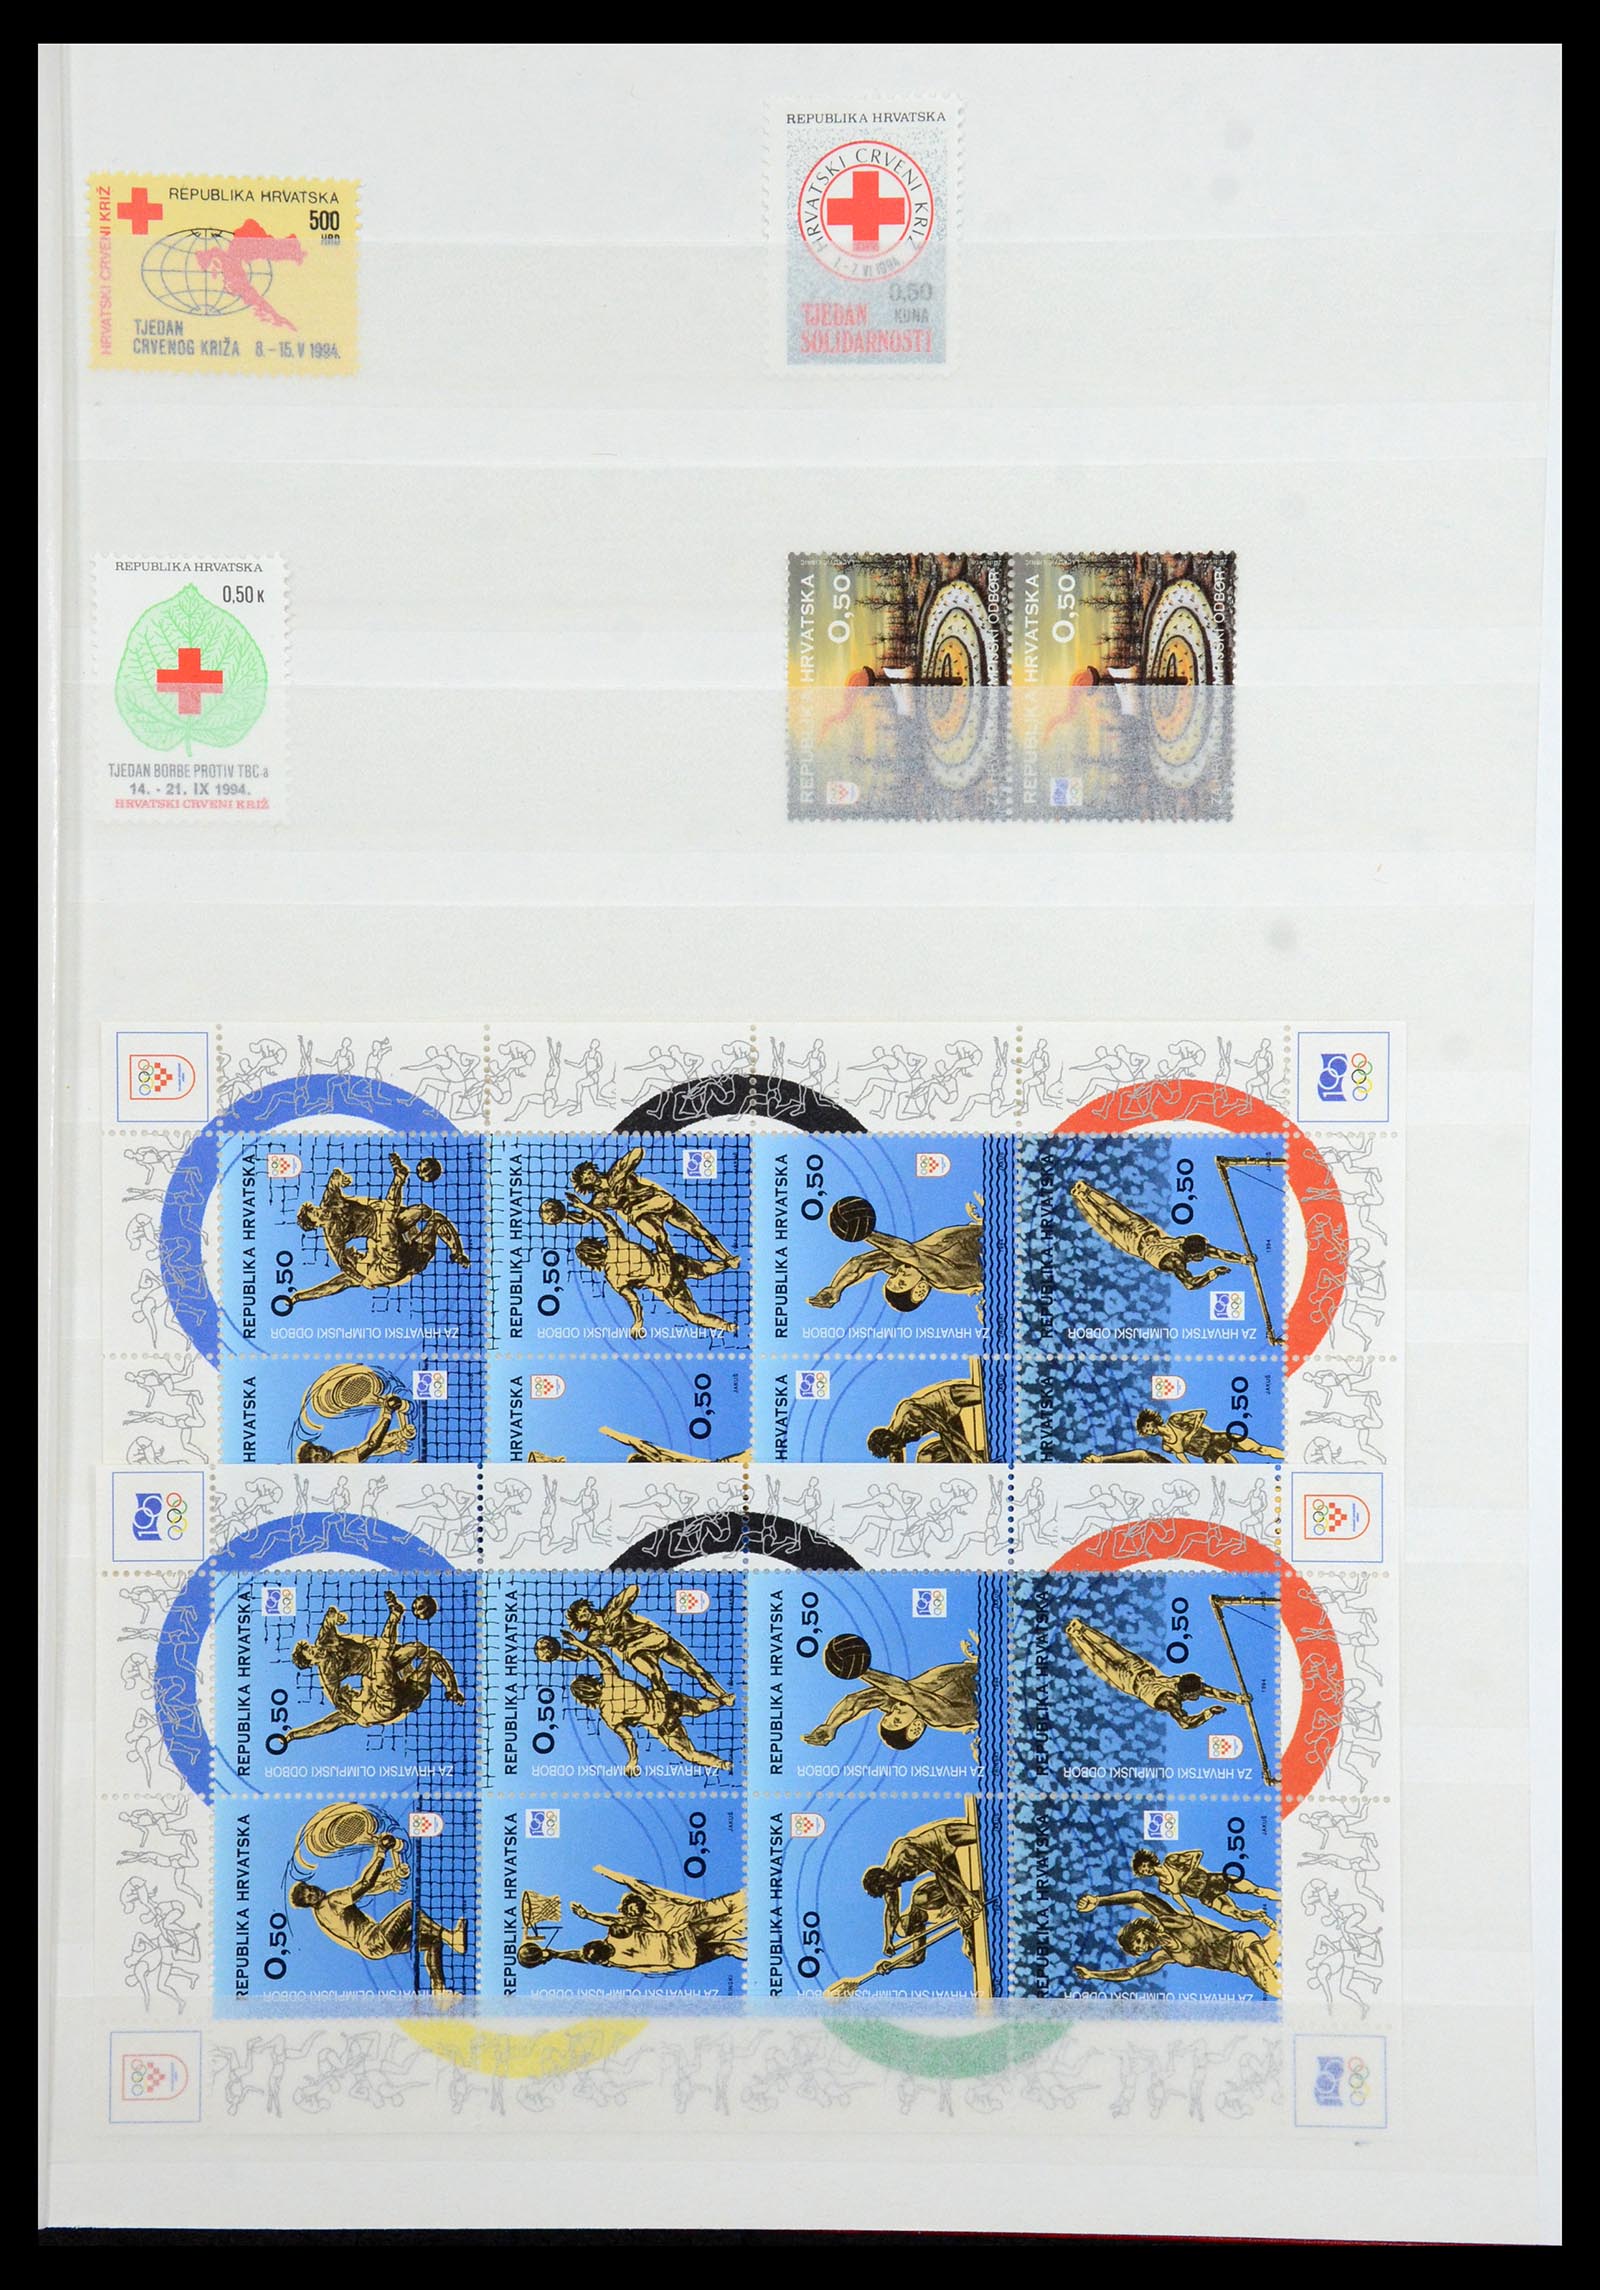 36461 057 - Stamp collection 36461 Slovenia, Croatia and Bosnia-Herzegovina MNH 1991